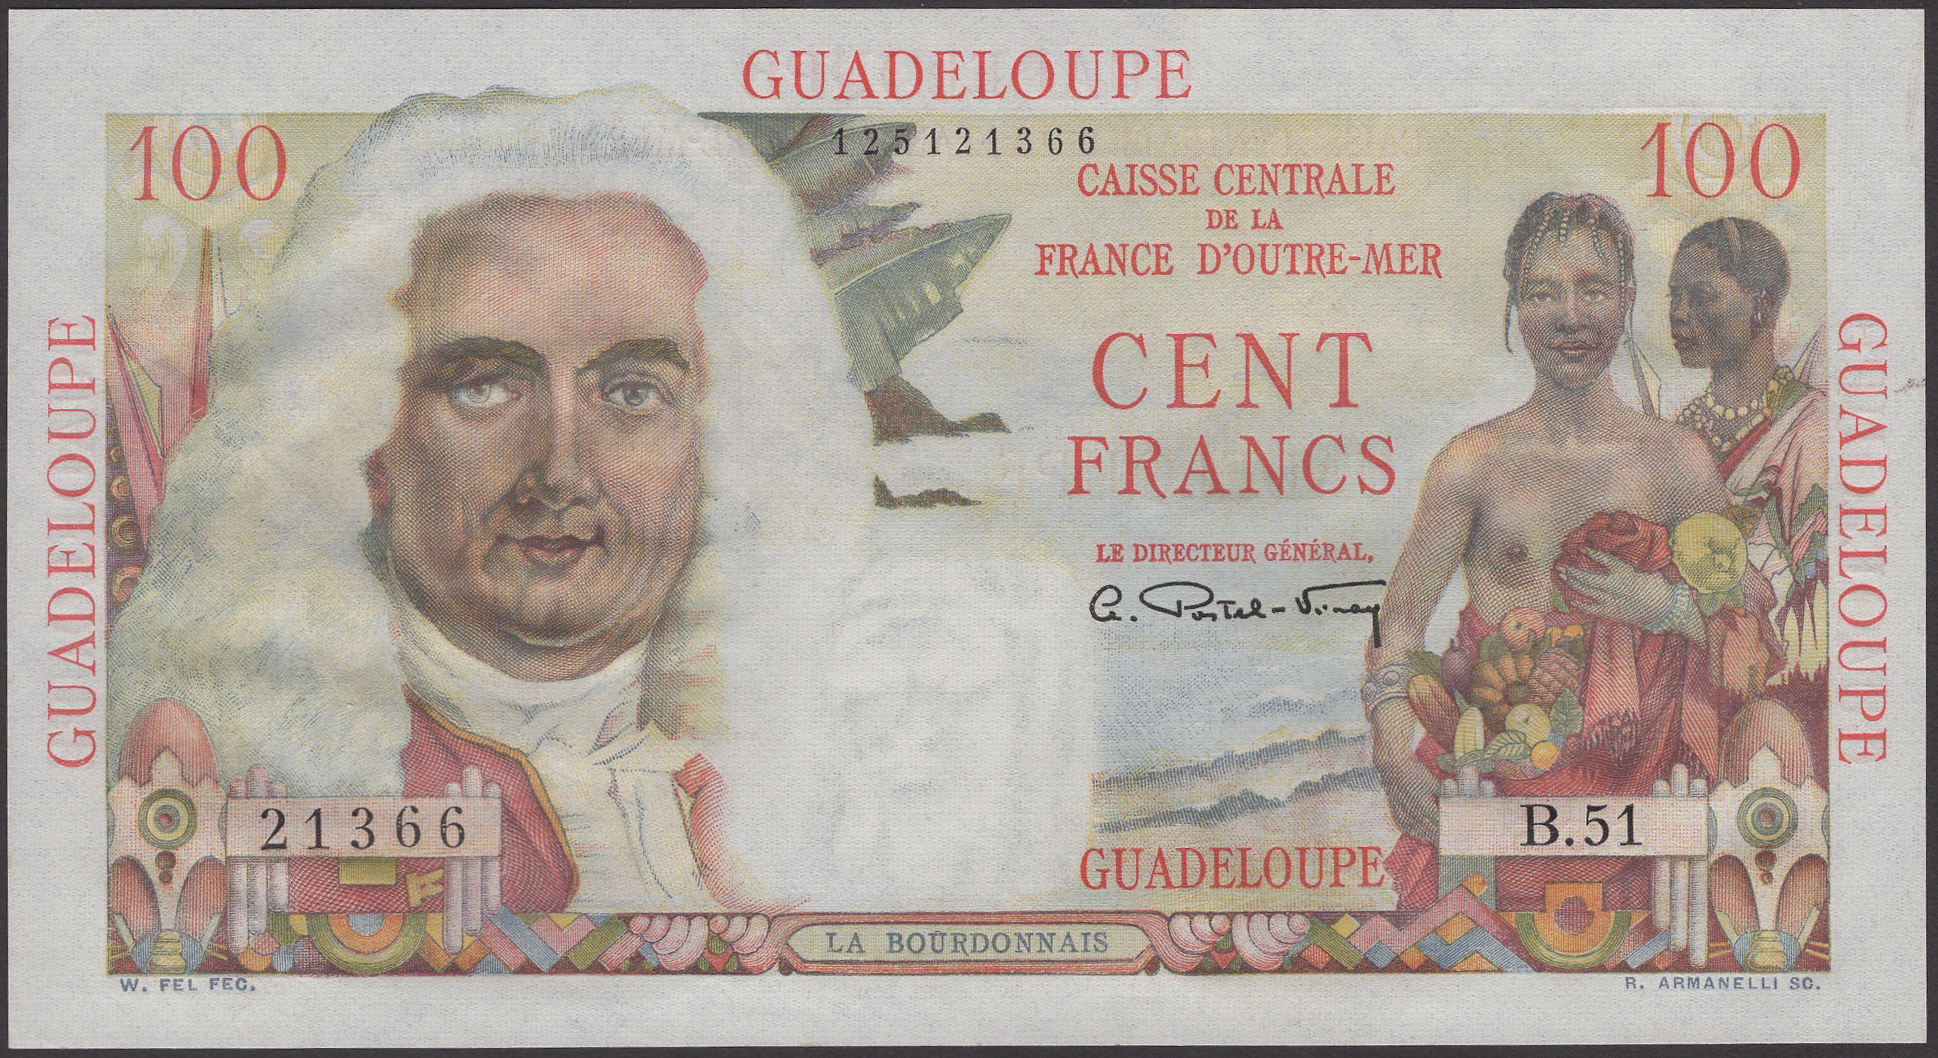 Caisse Centrale de la France d'Outre Mer, Guadeloupe, 100 Francs, ND (1947-49), serial...